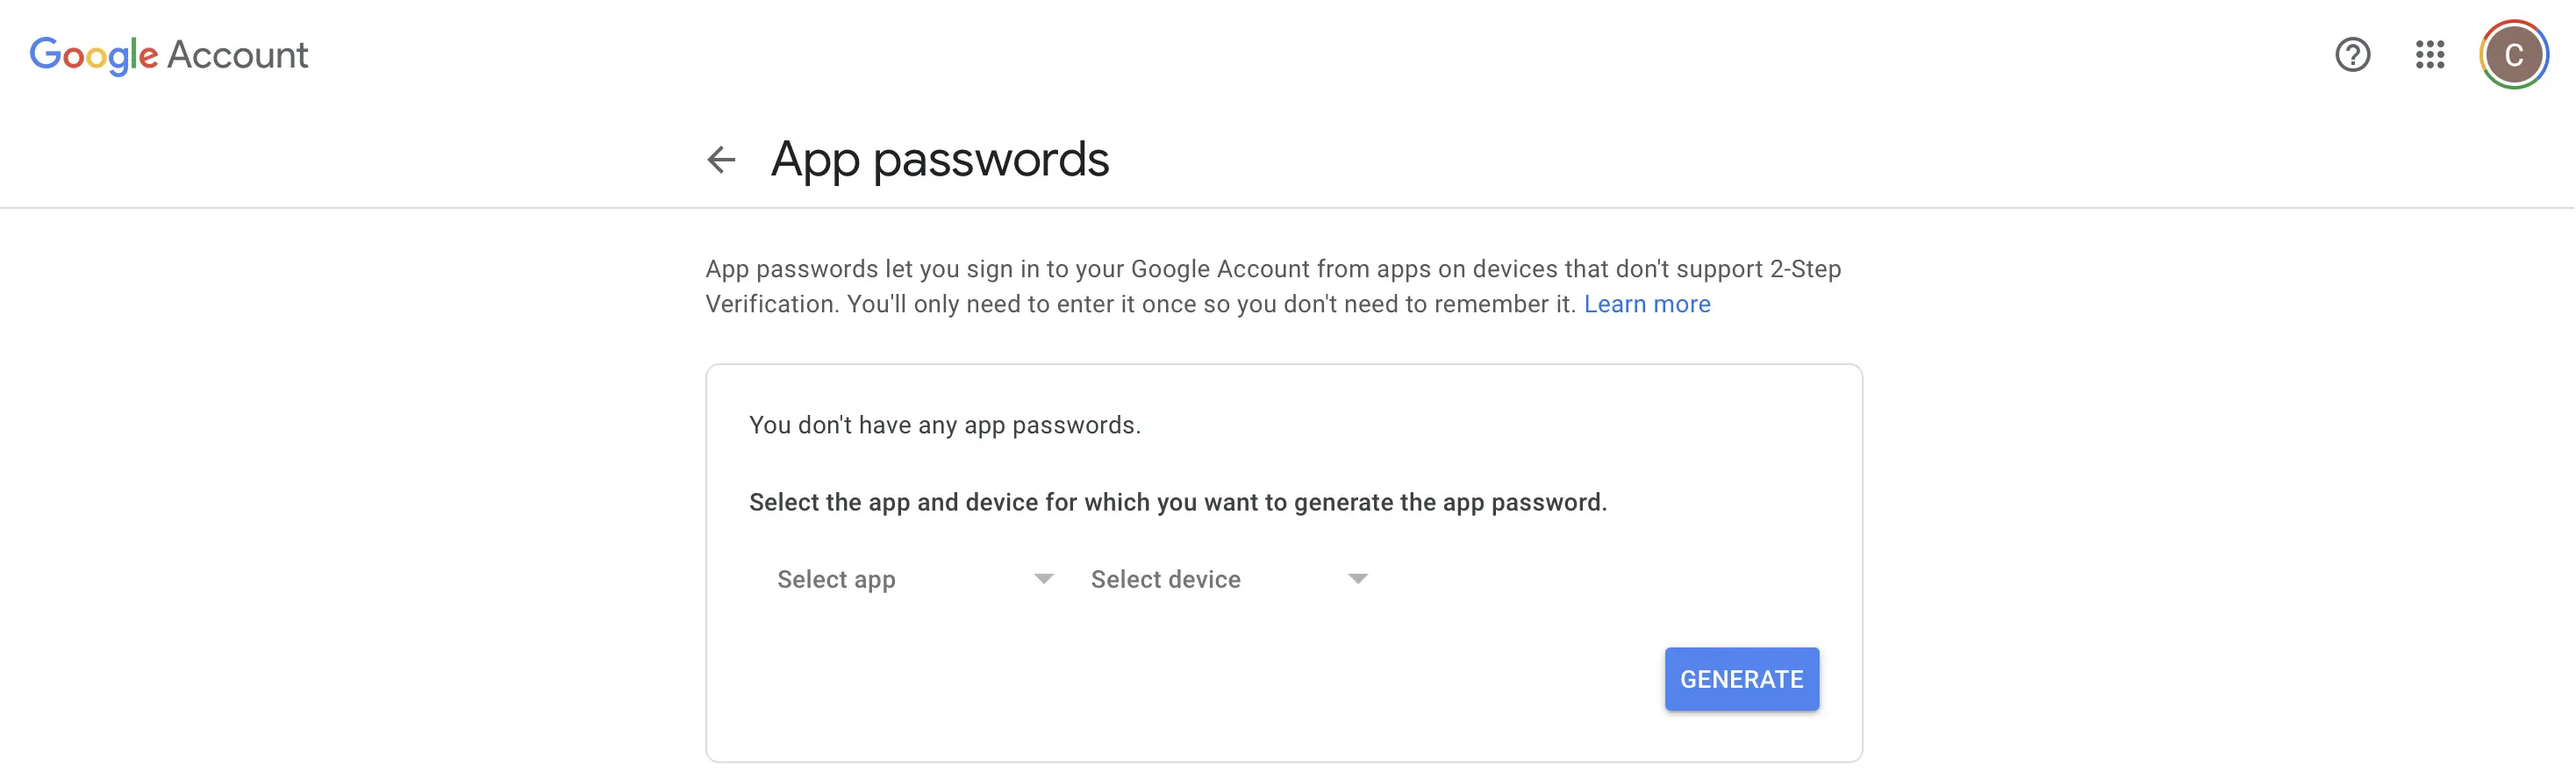 google app passwords